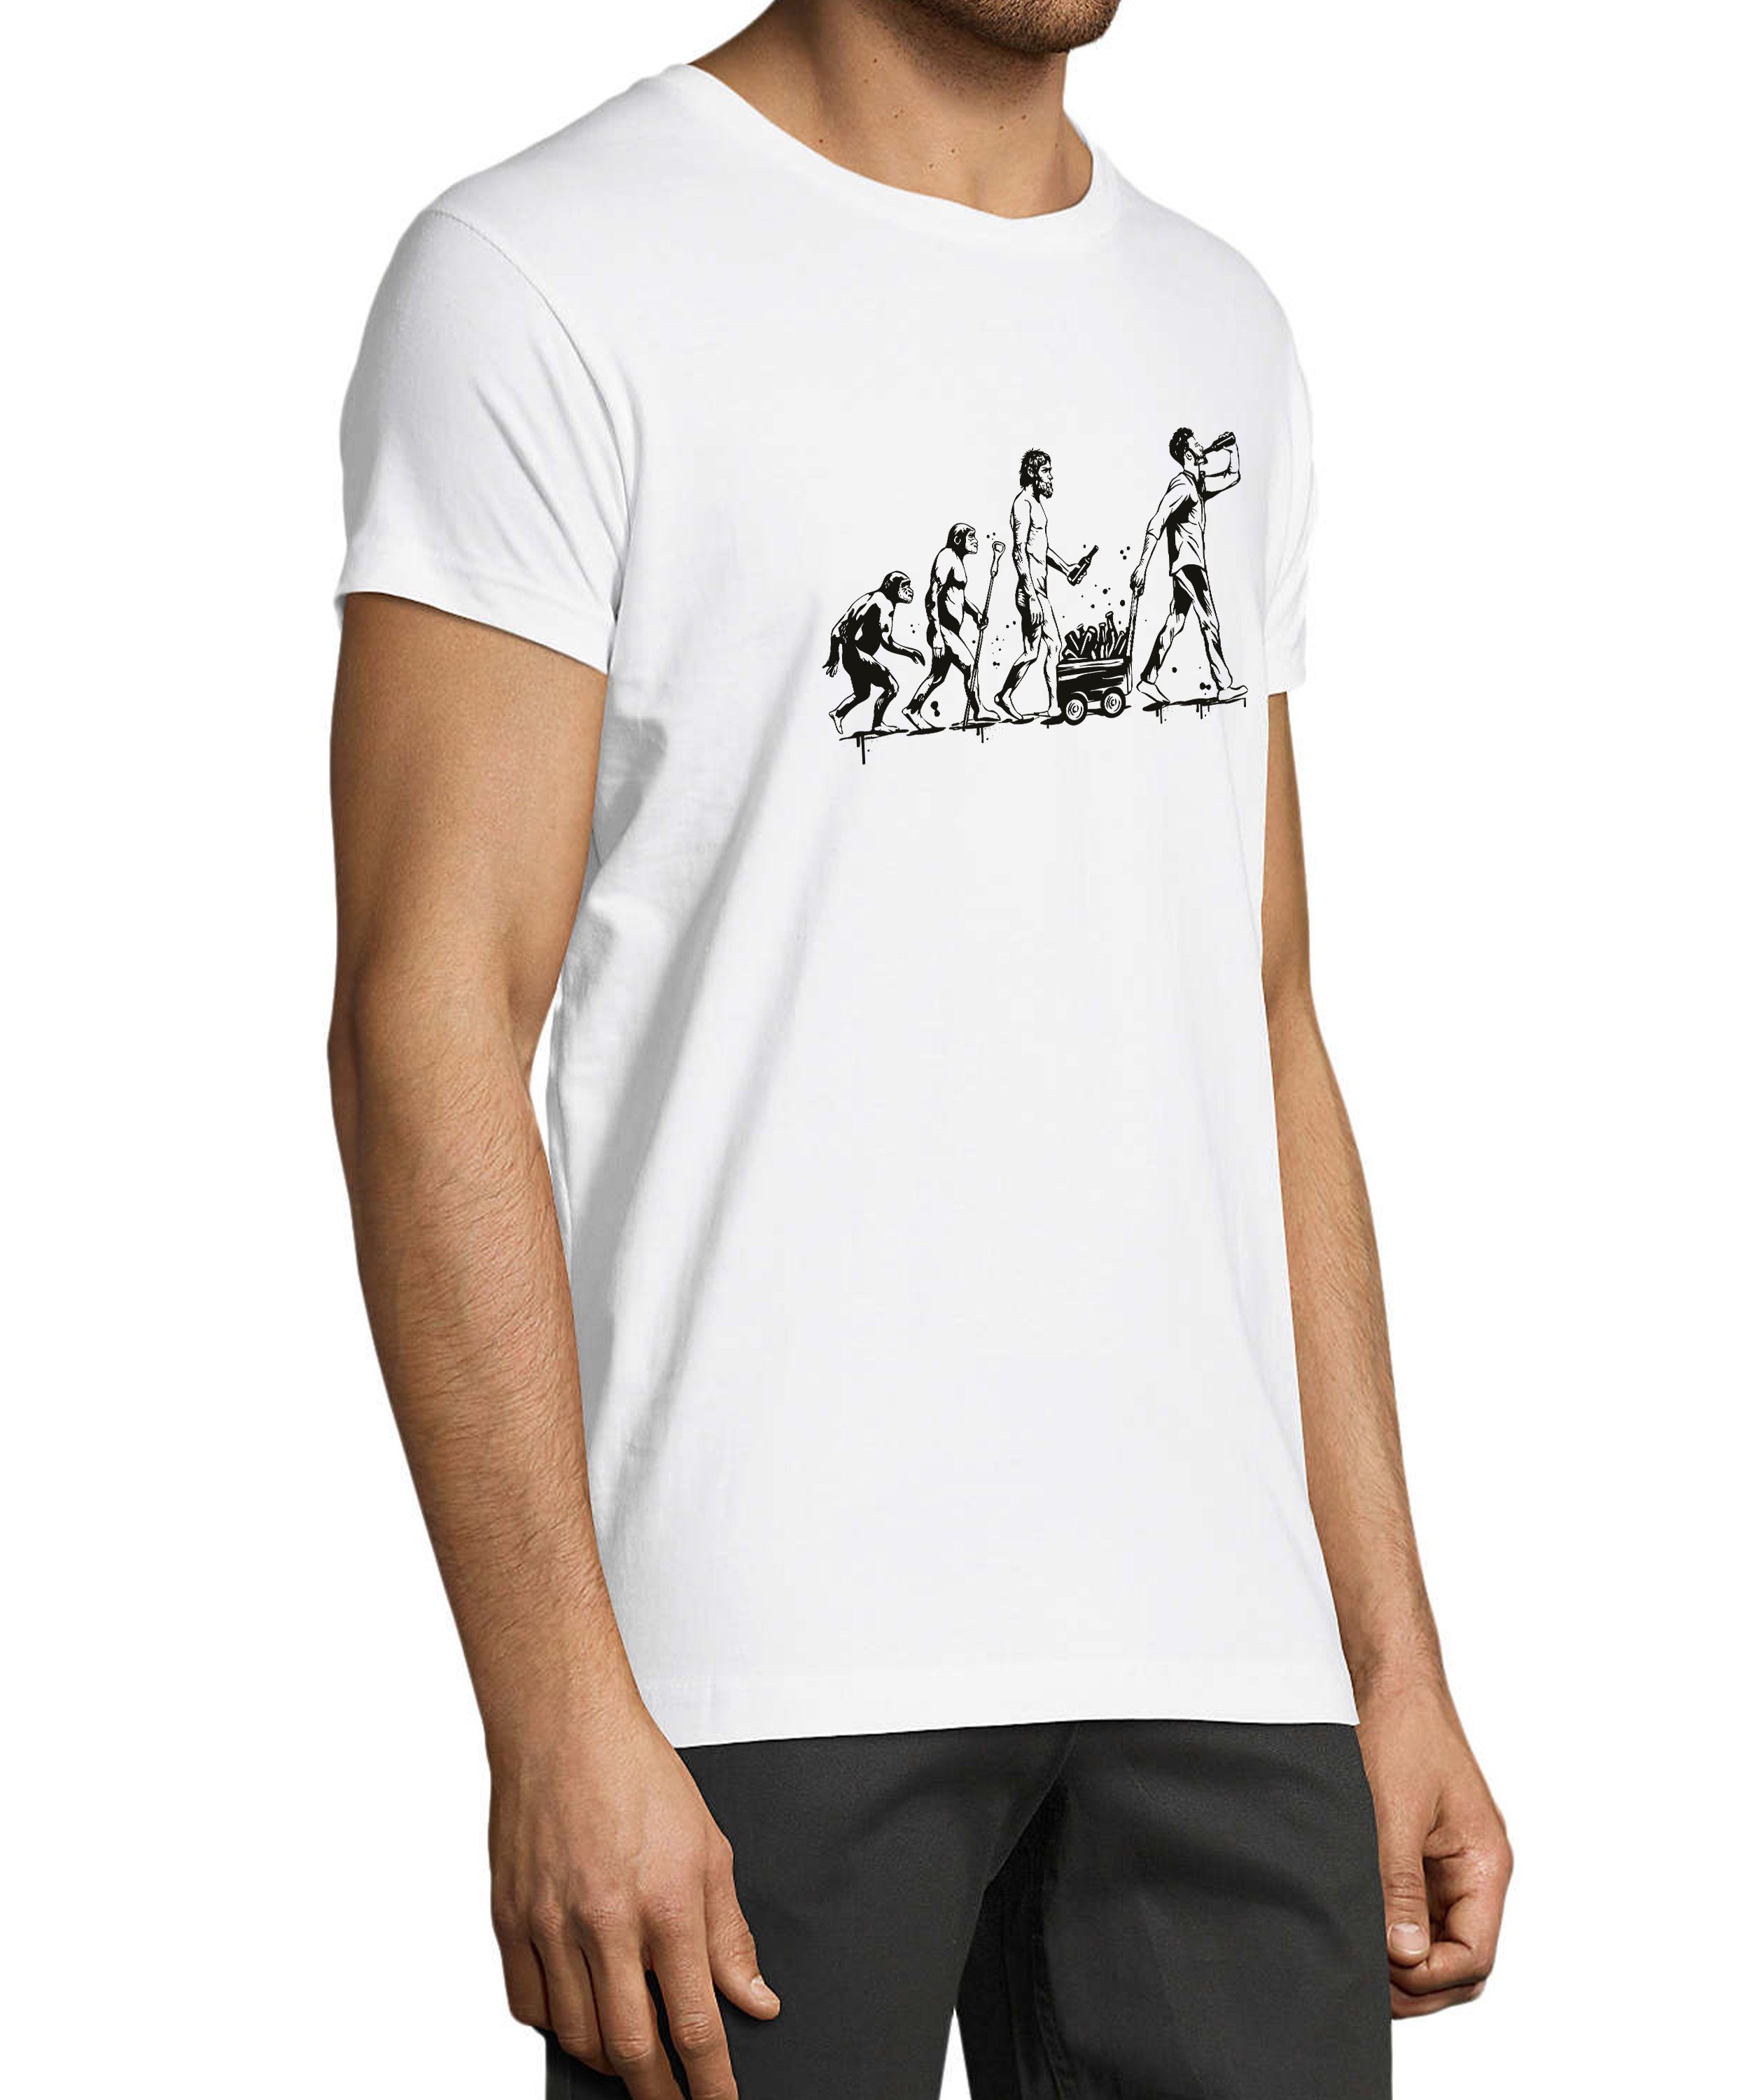 mit Print weiss MyDesign24 - Trinkshirt Baumwollshirt Mann trinkenden Fit, Regular Herren zum Aufdruck bis T-Shirt i312 Evolution Fun Shirt